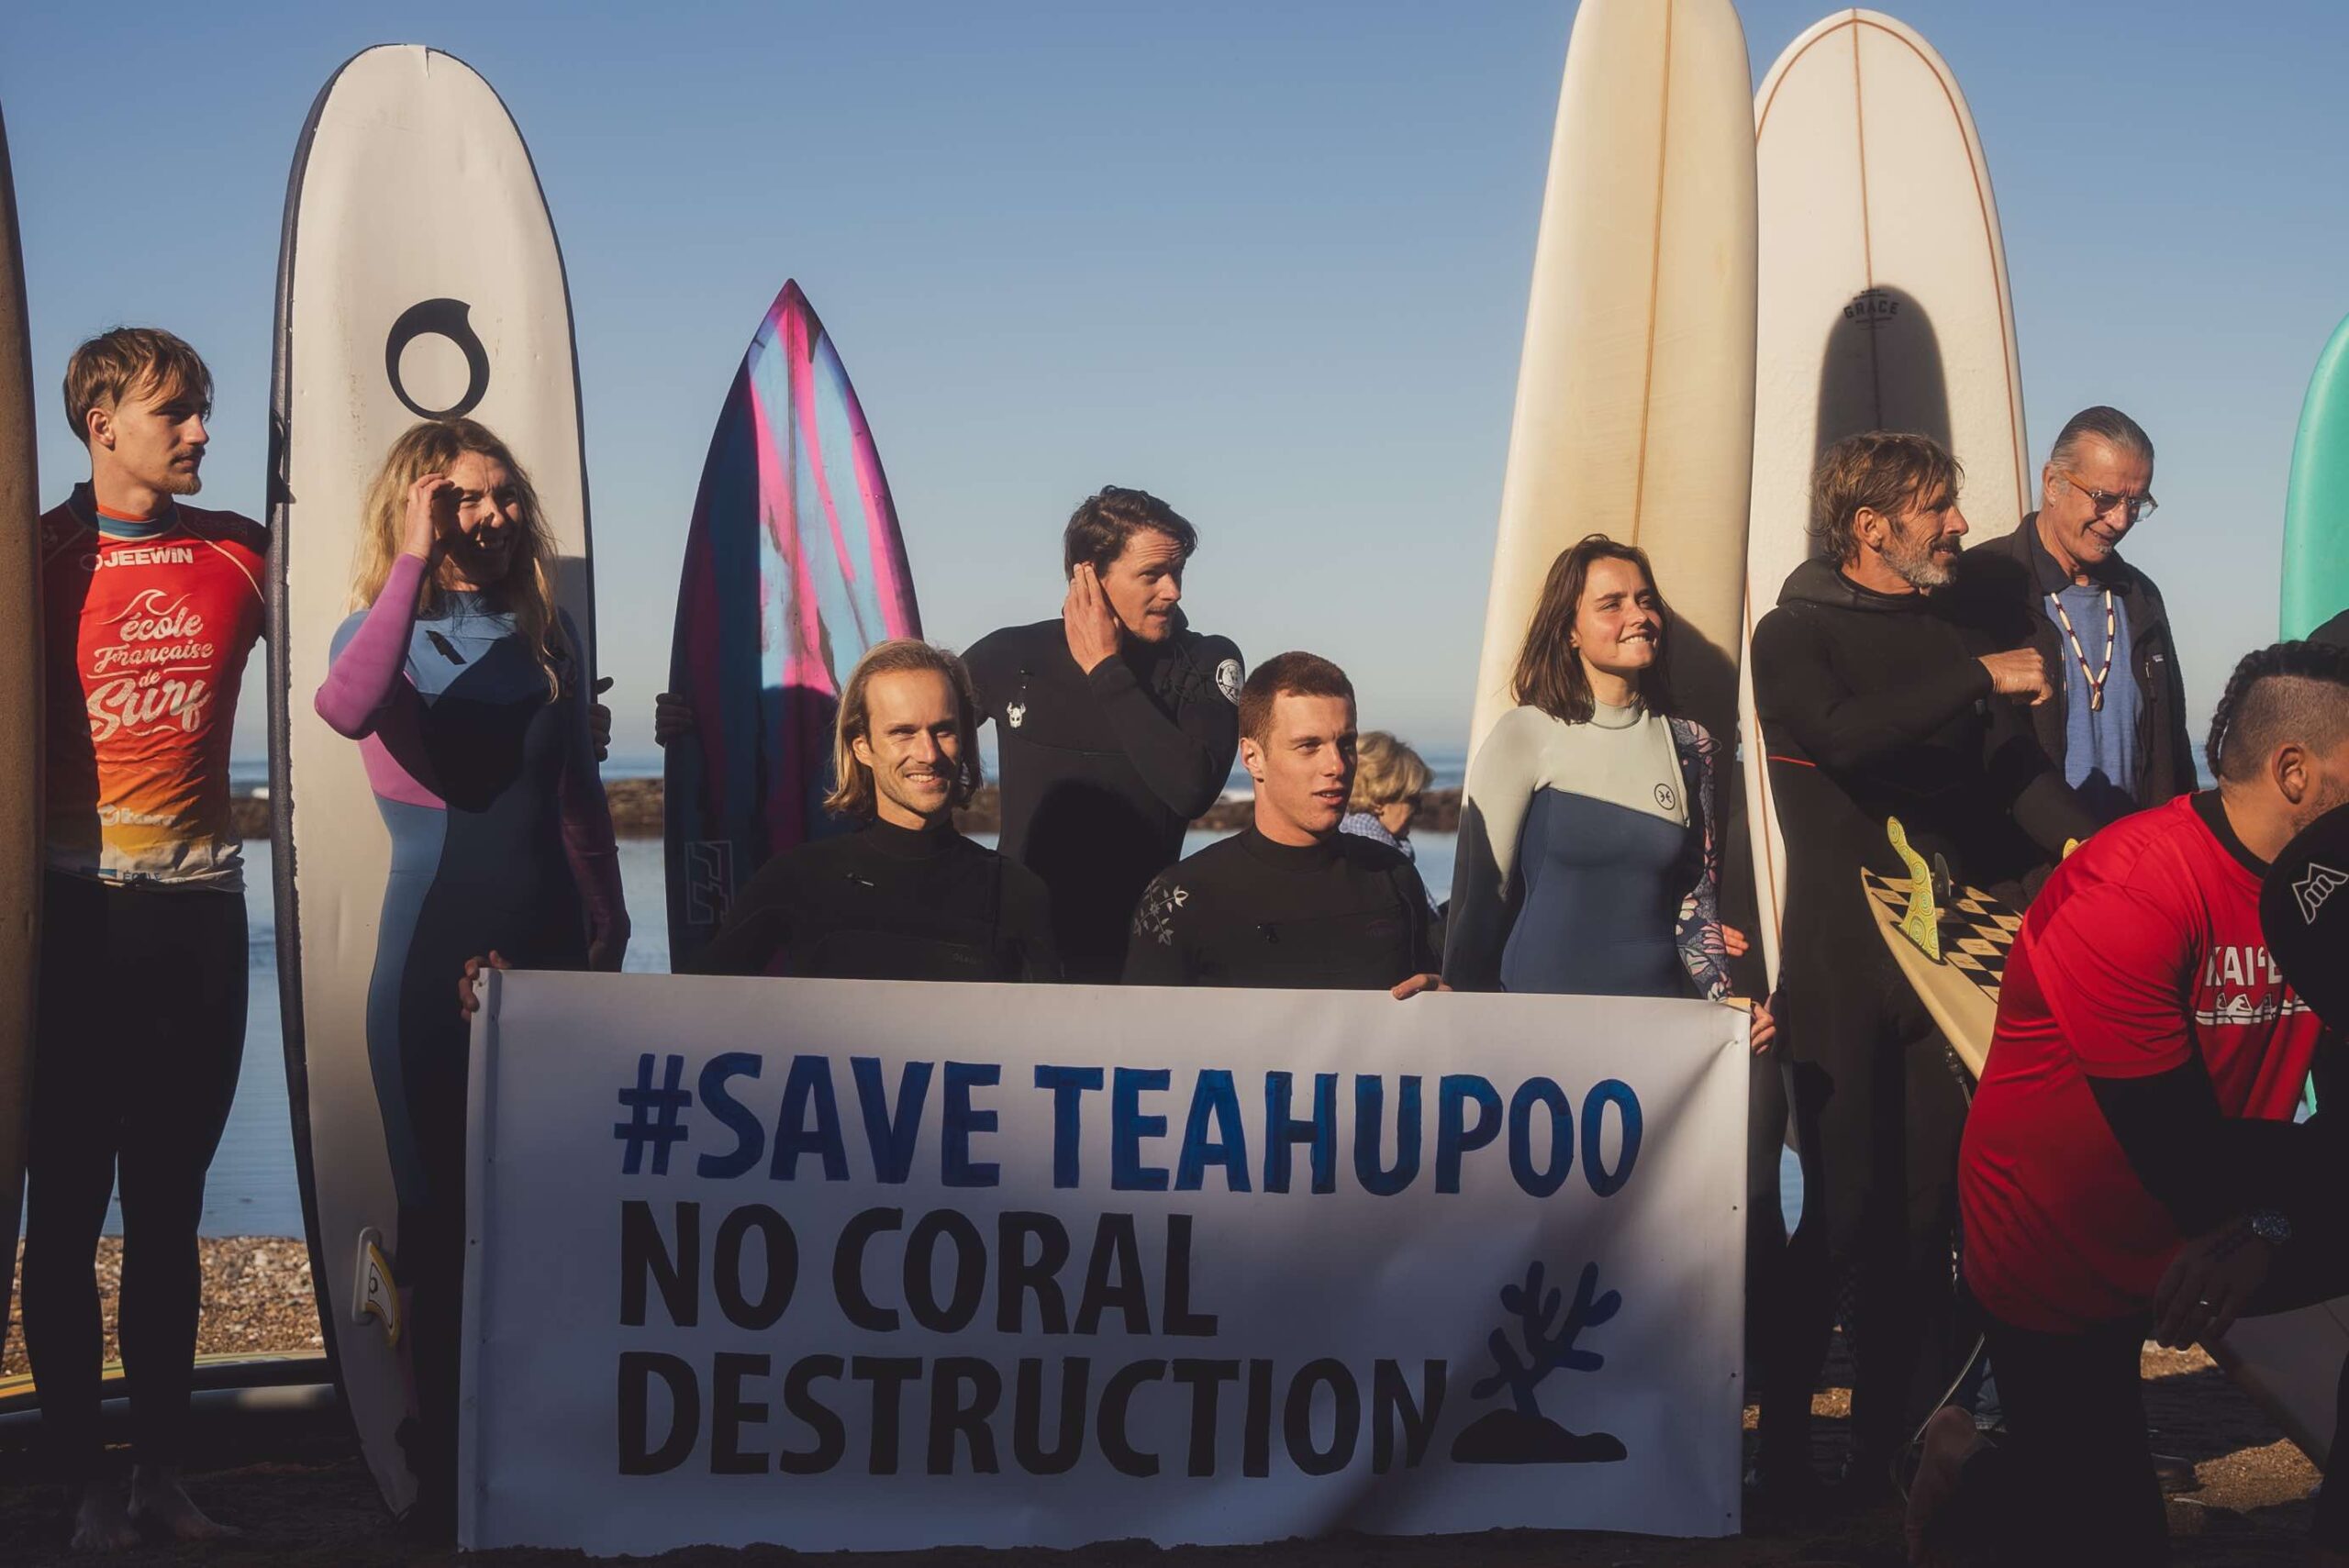 Les surfeurs tiennent une affiche "Save Teahupoo, no coral destruction"